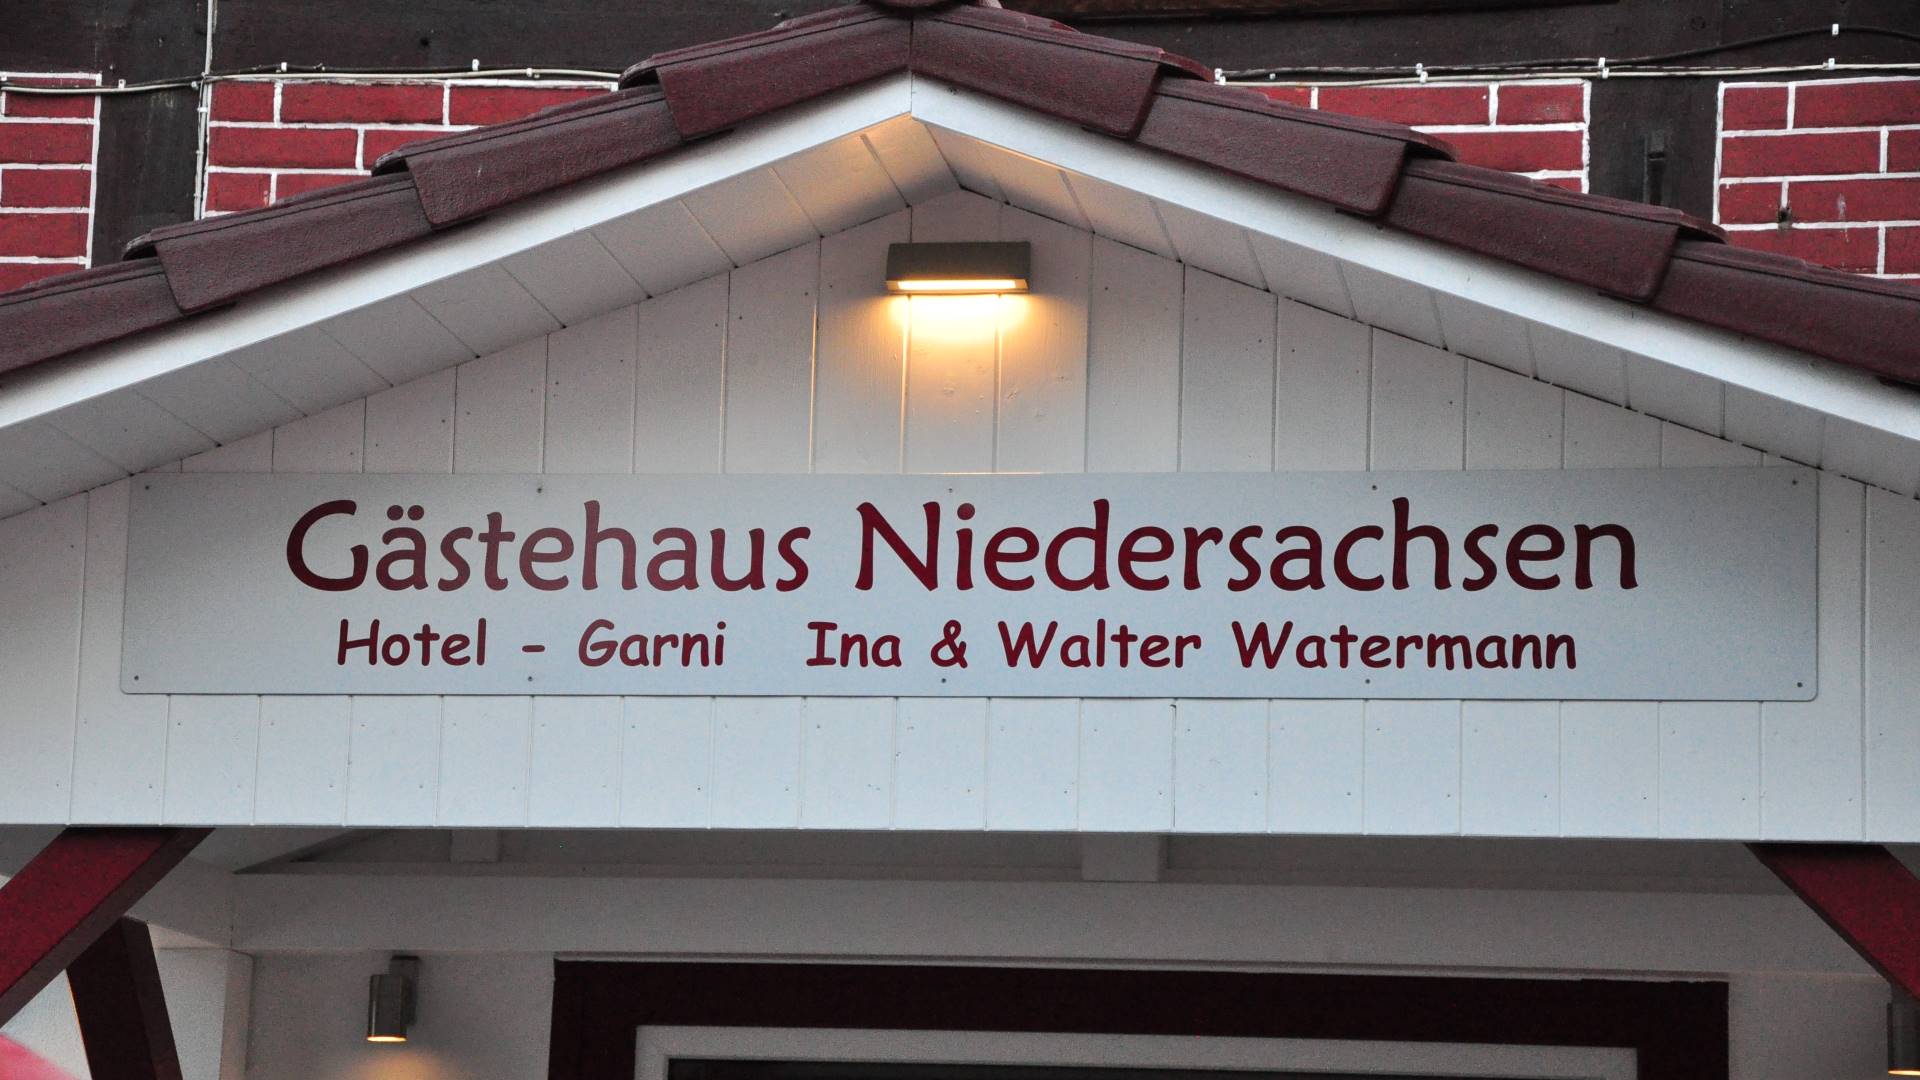 Gästehaus Niedersachsen